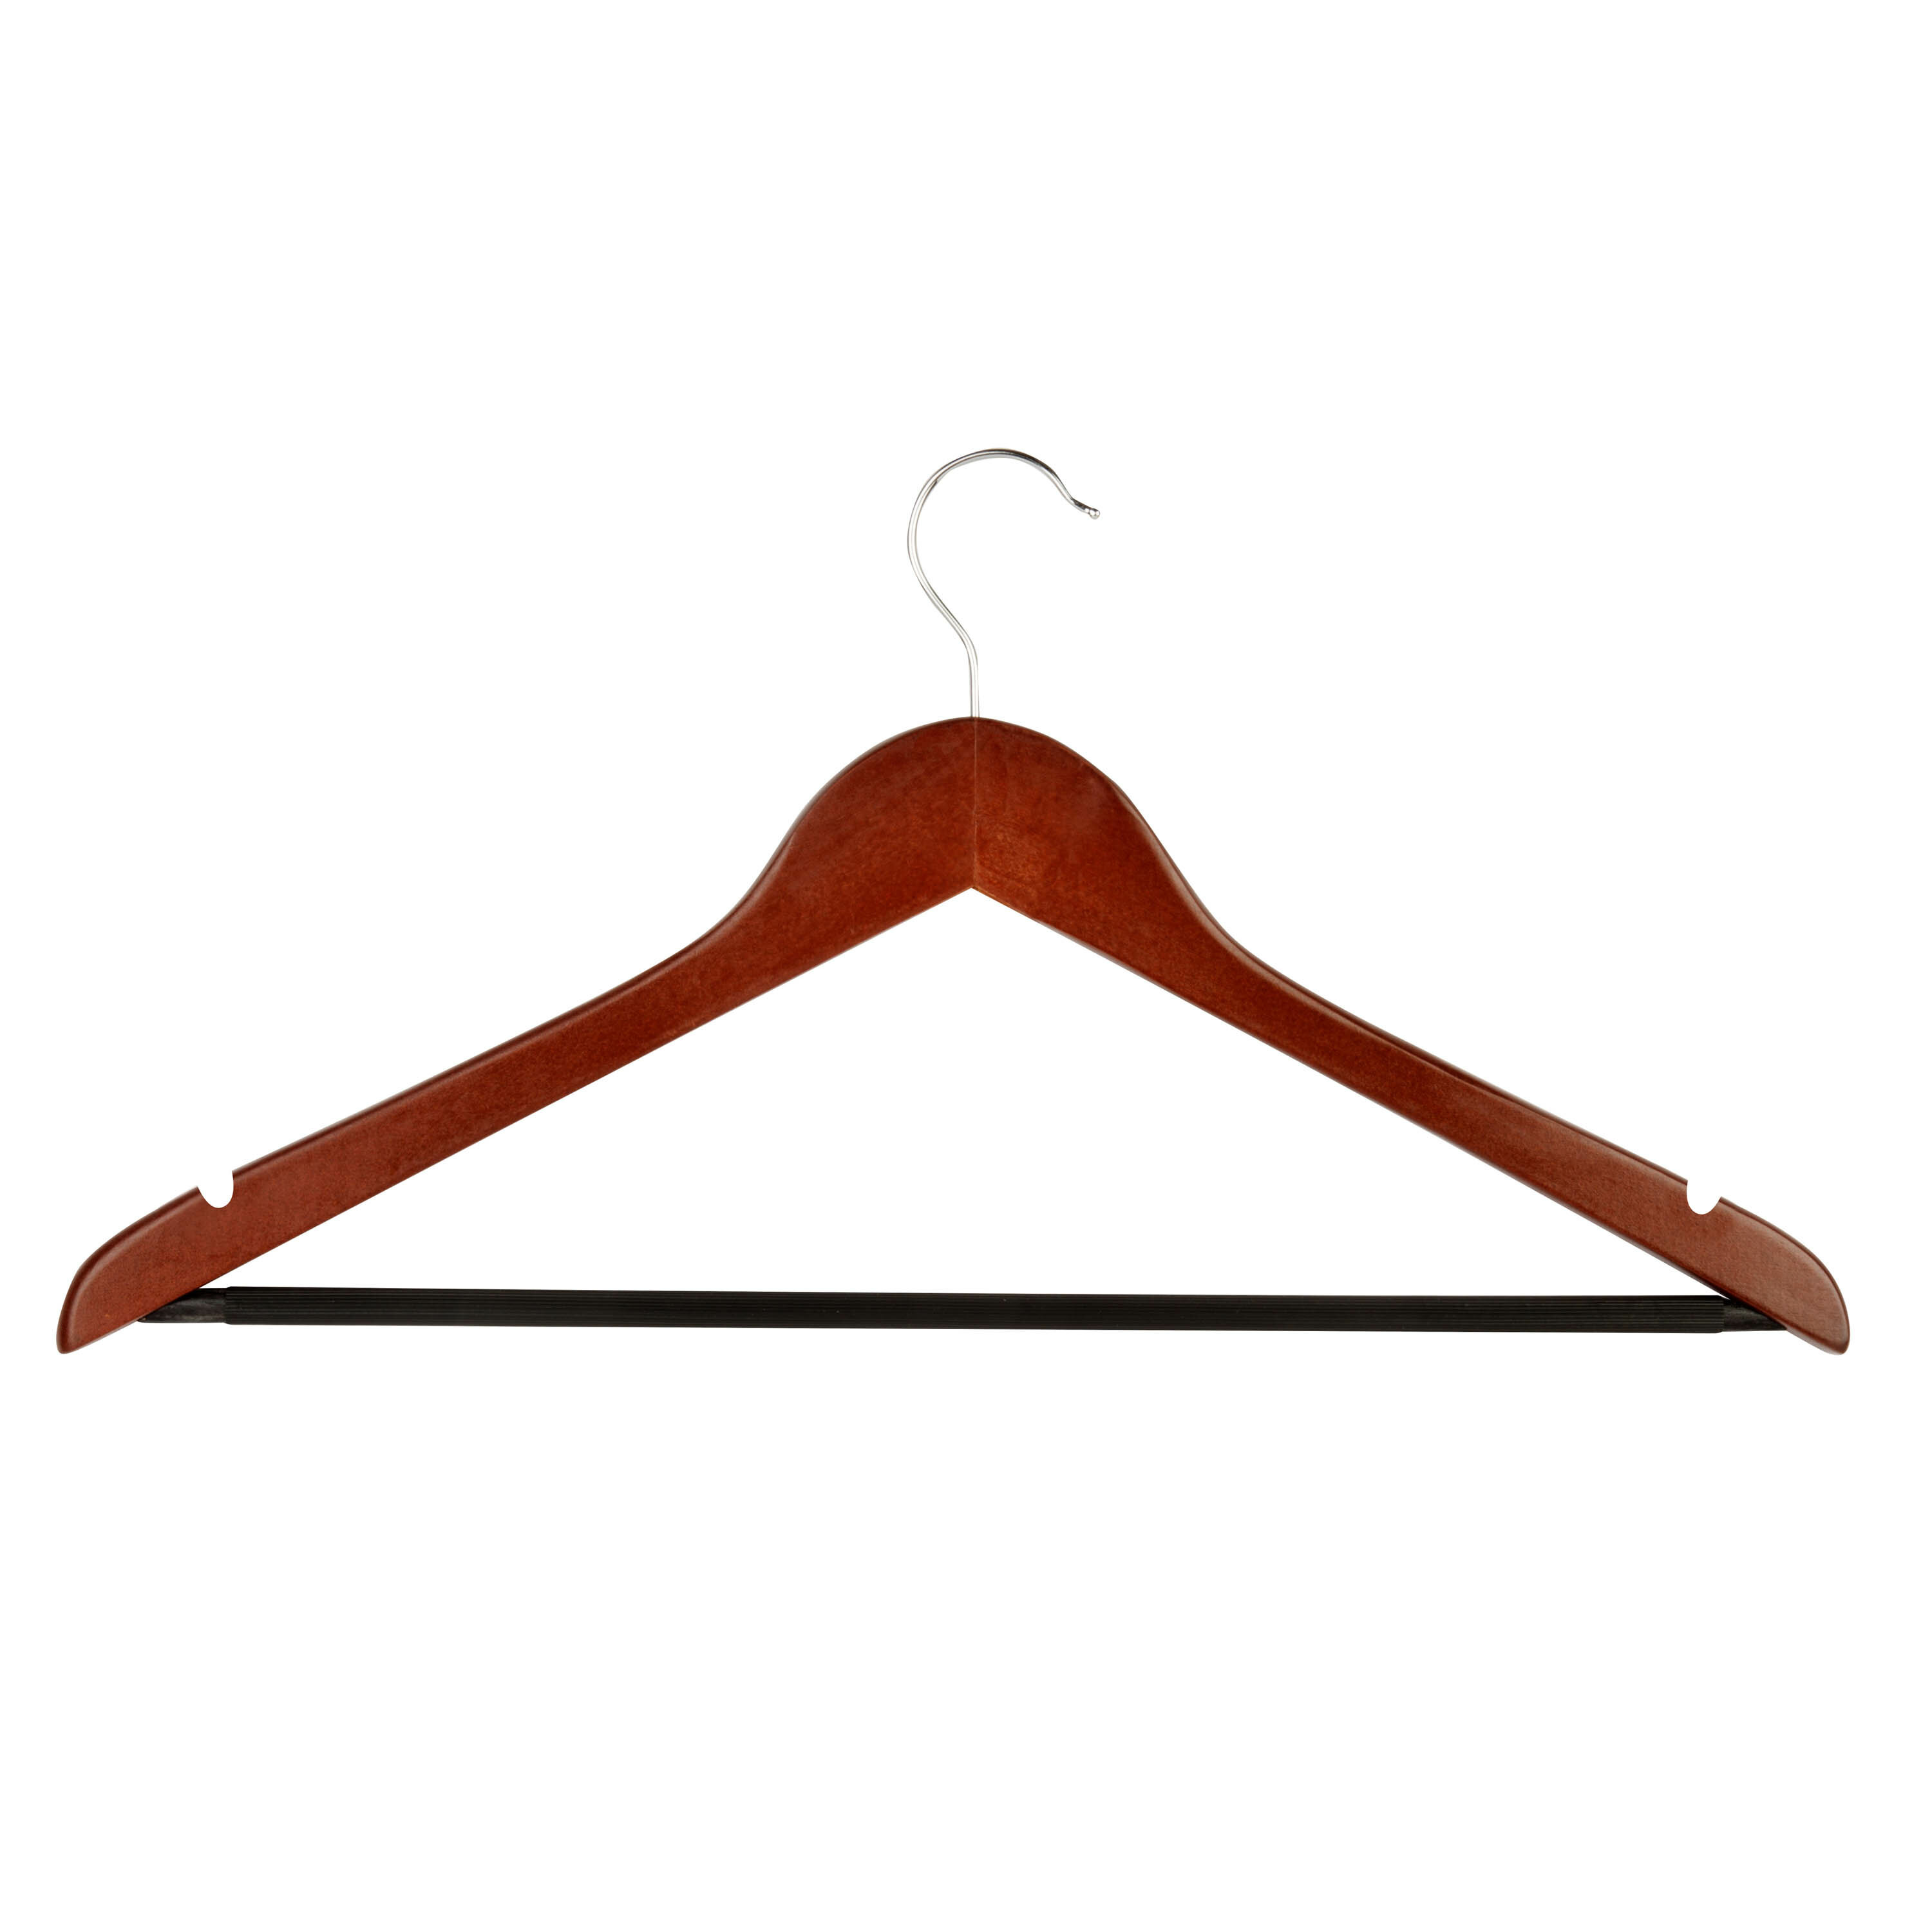 wooden coat hangers bulk